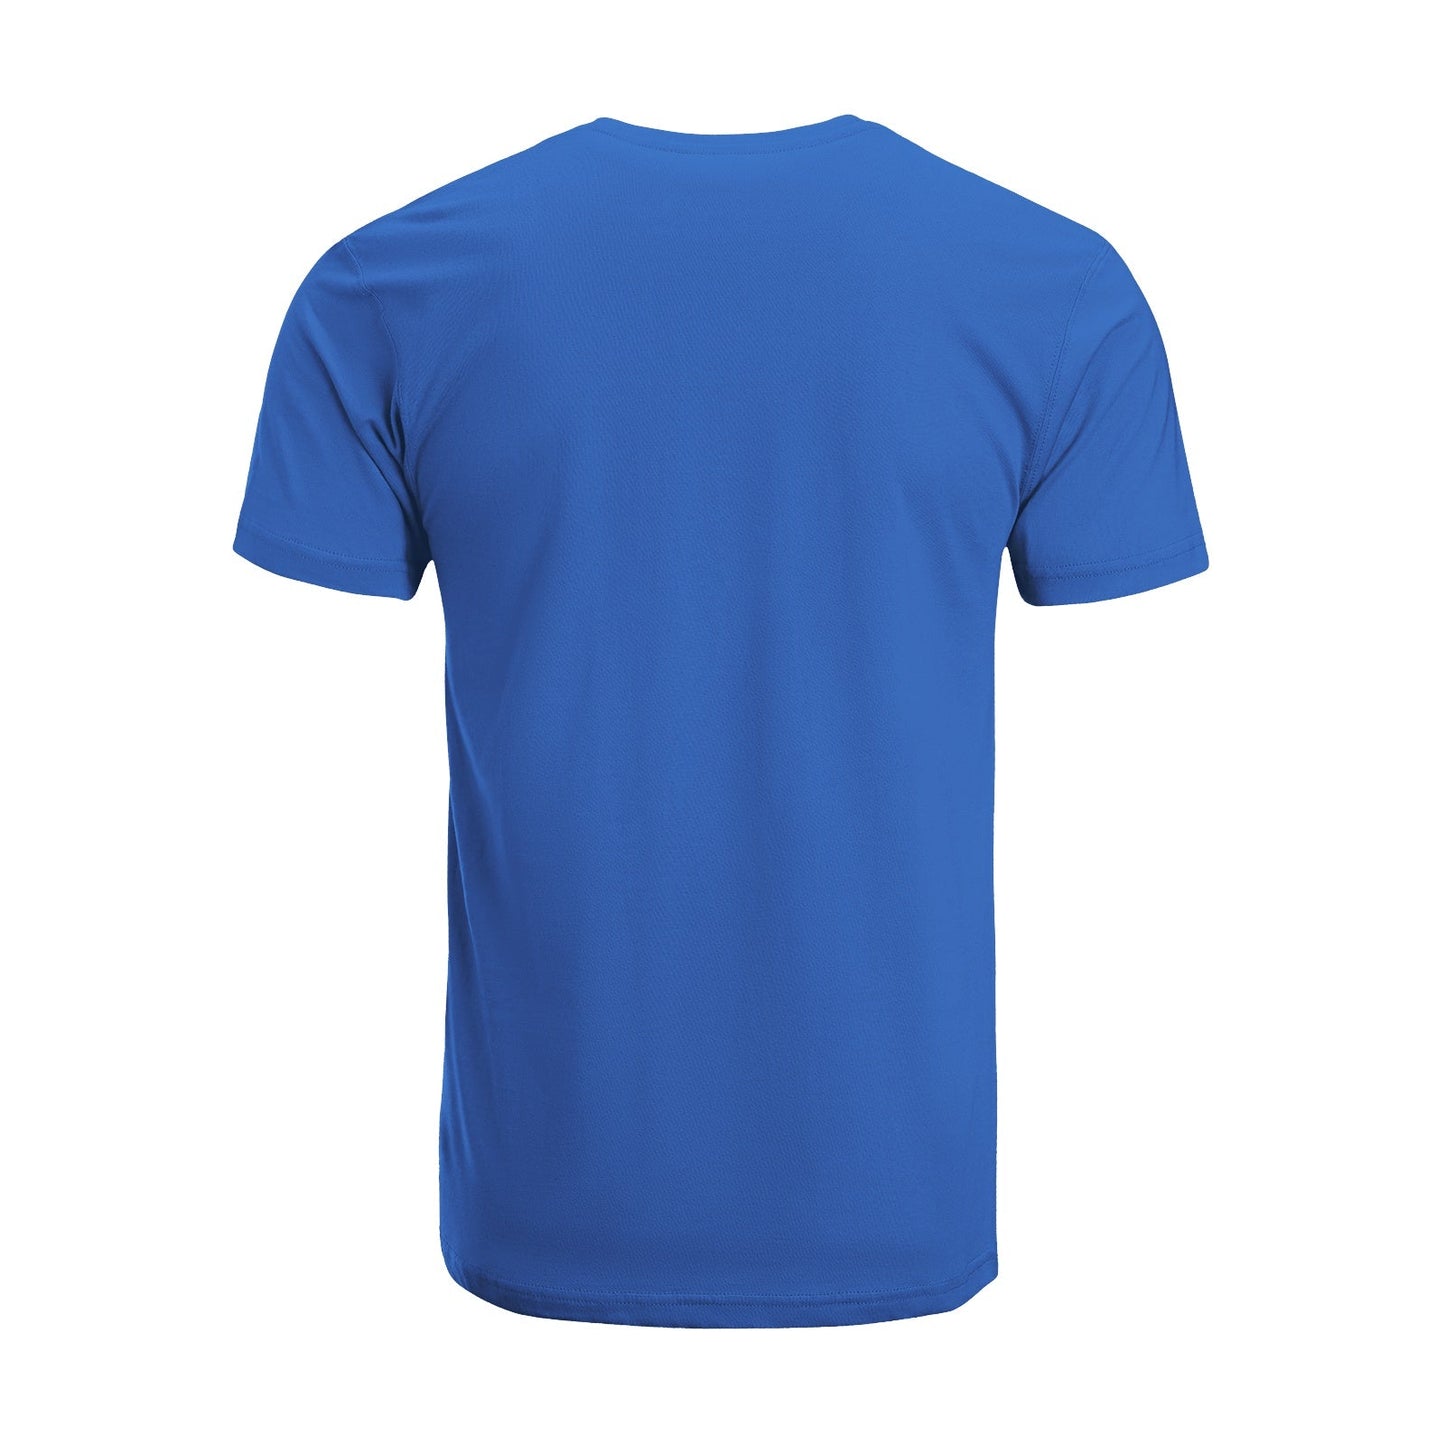 Unisex Short Sleeve Crew Neck Cotton Jersey T-Shirt TRUCK 46